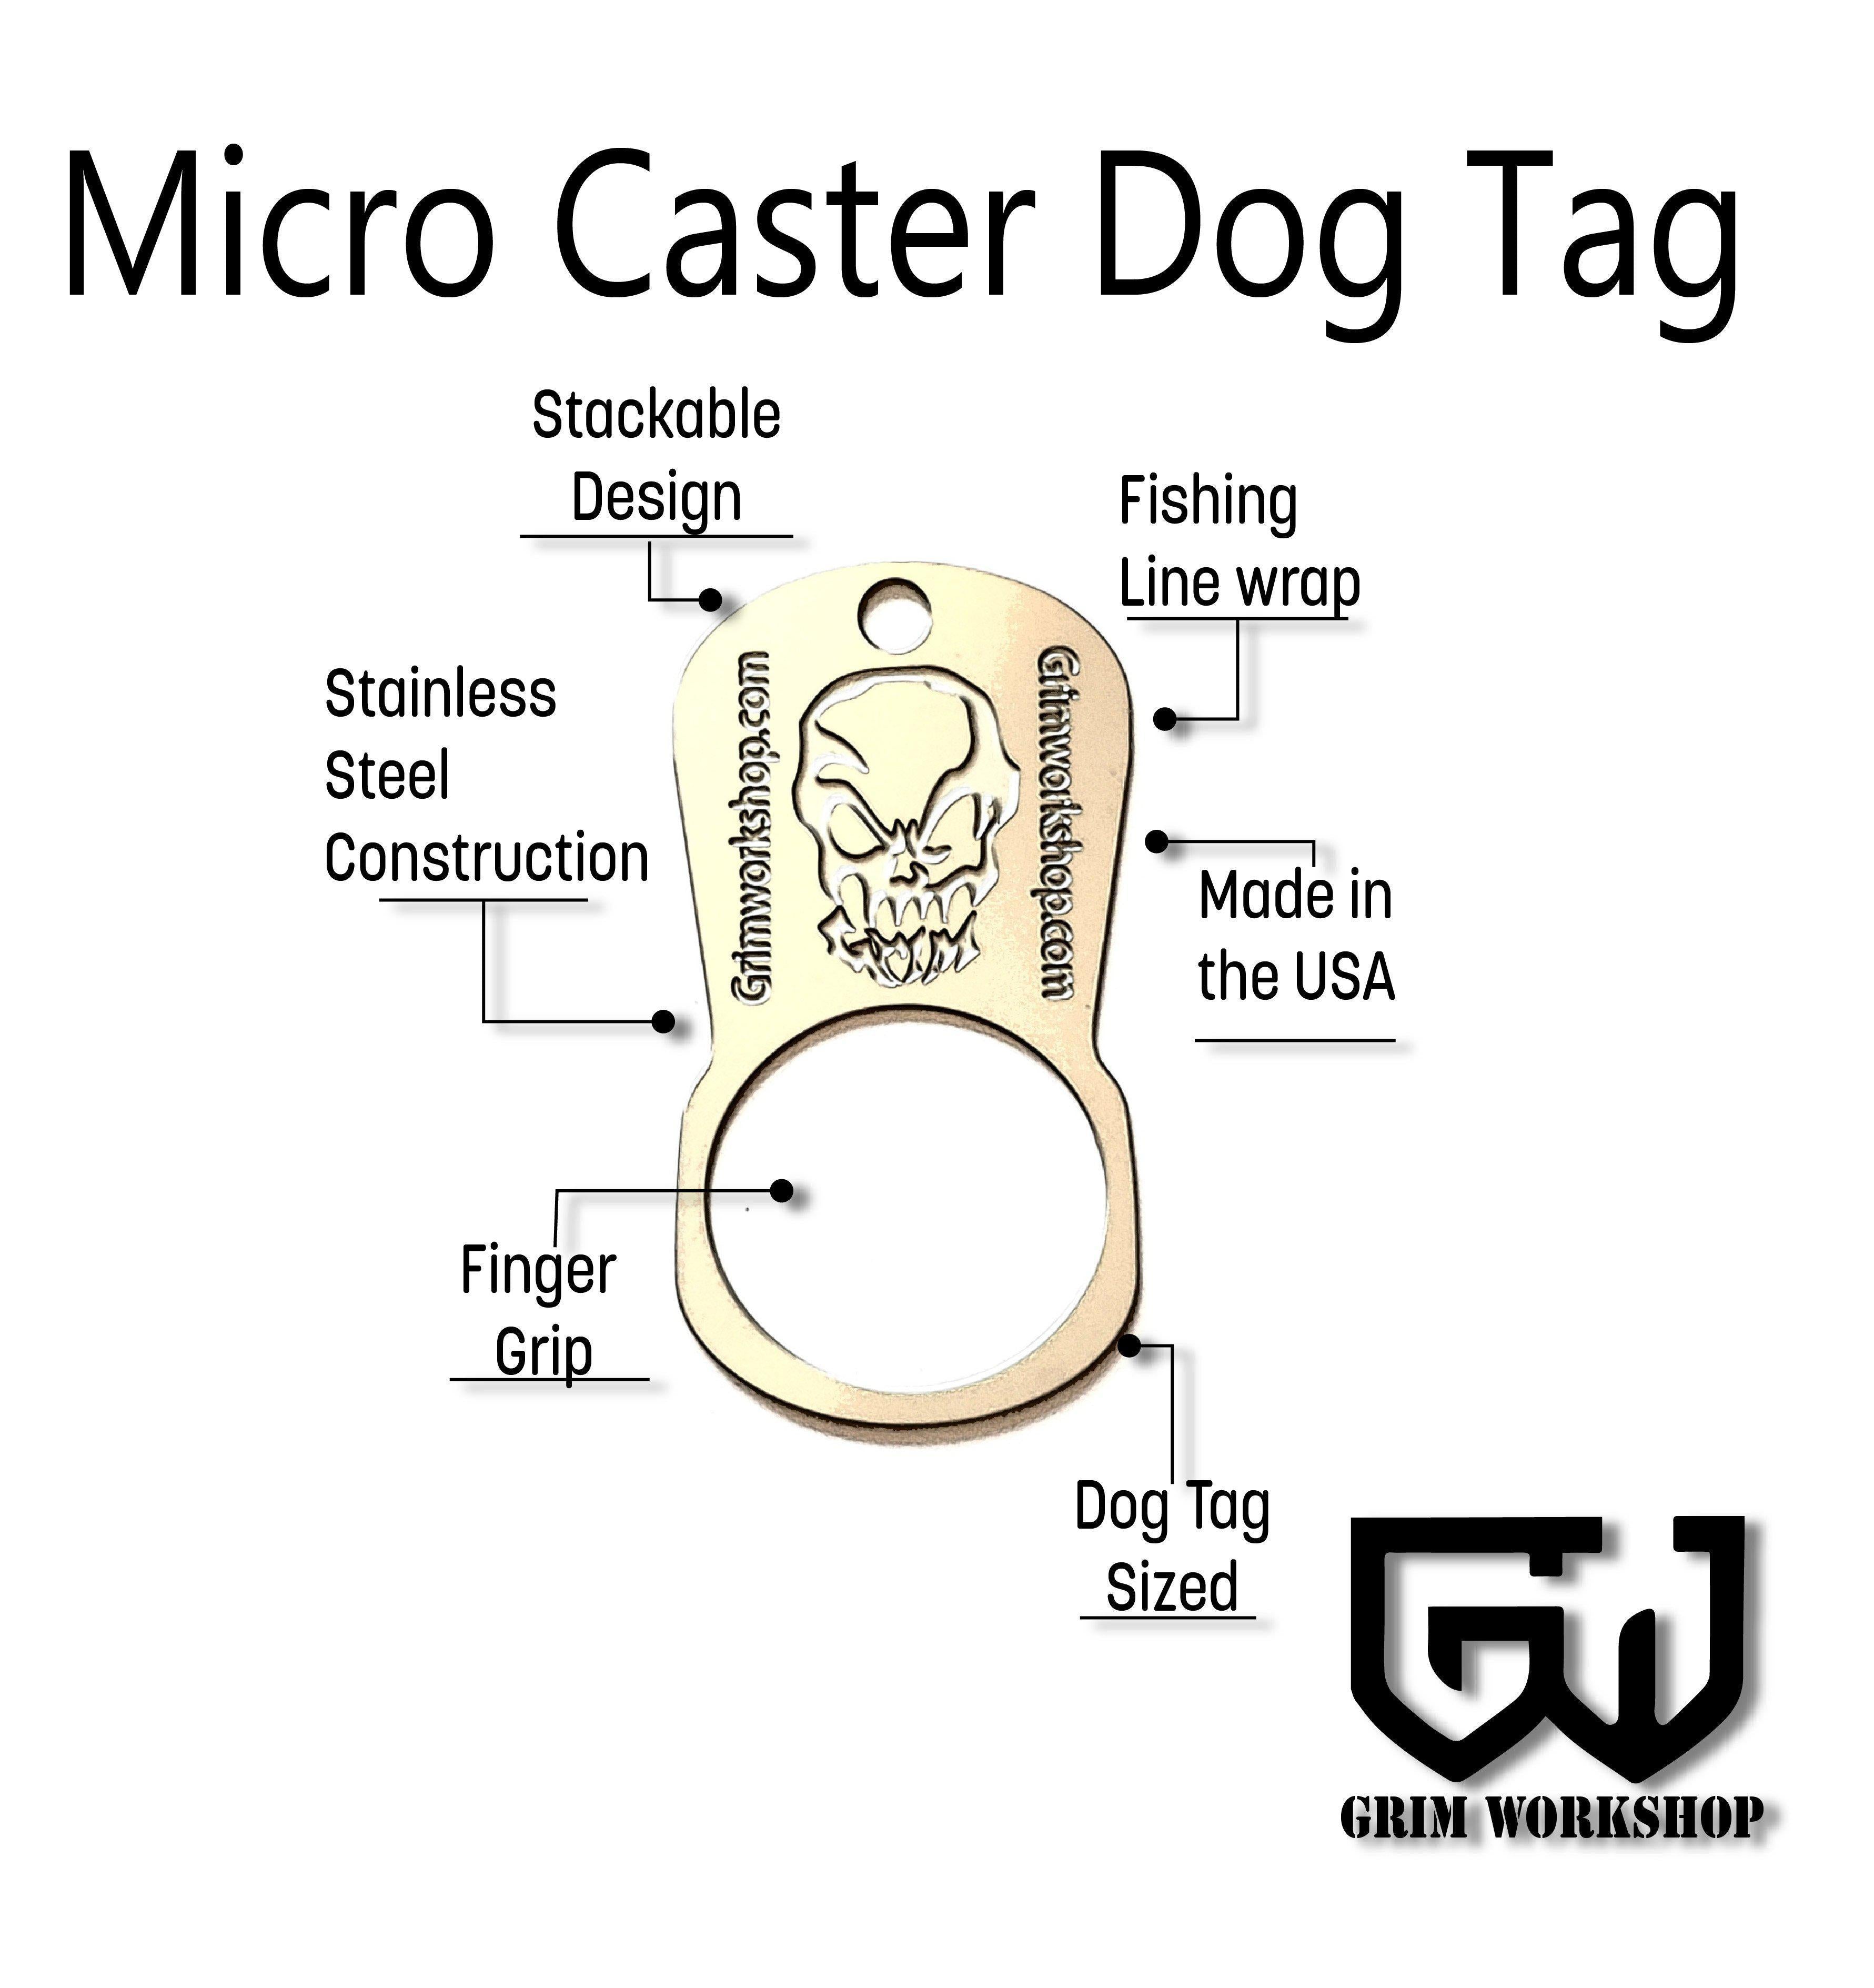 Grim Workshop Micro Caster Dog Tag